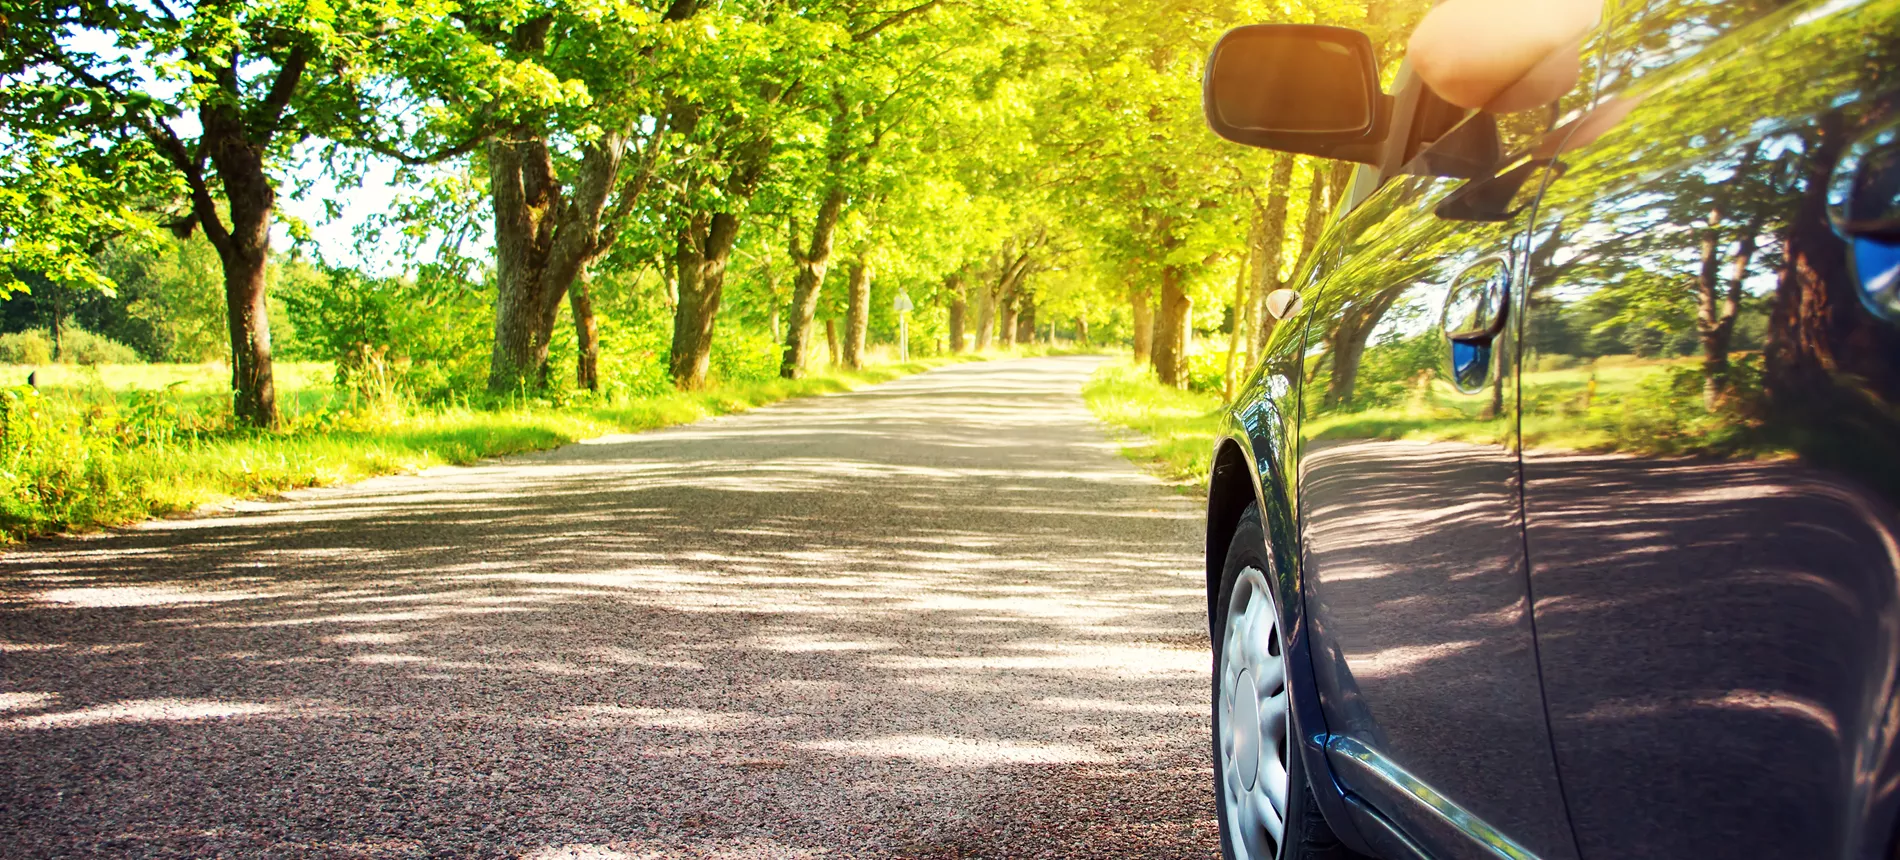 Nærbilde av bil som kjører på vei med grønne trær og sol